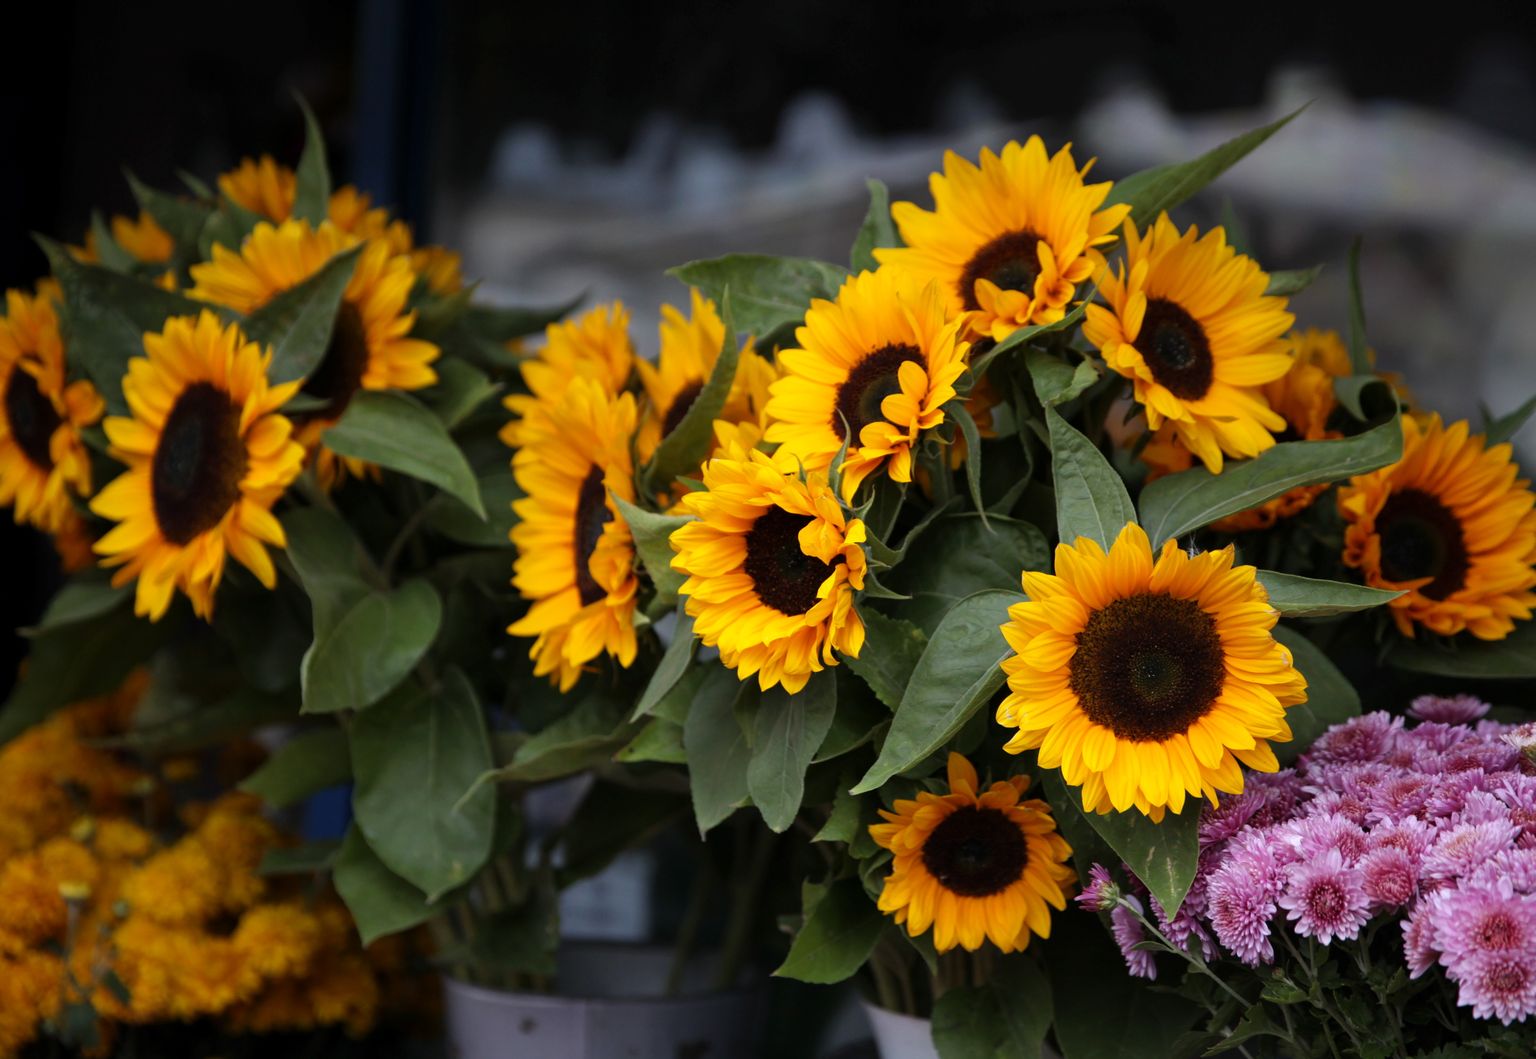 Ziedu tirdzniecība Zinību dienas rītā Āgenskalna tirgū.